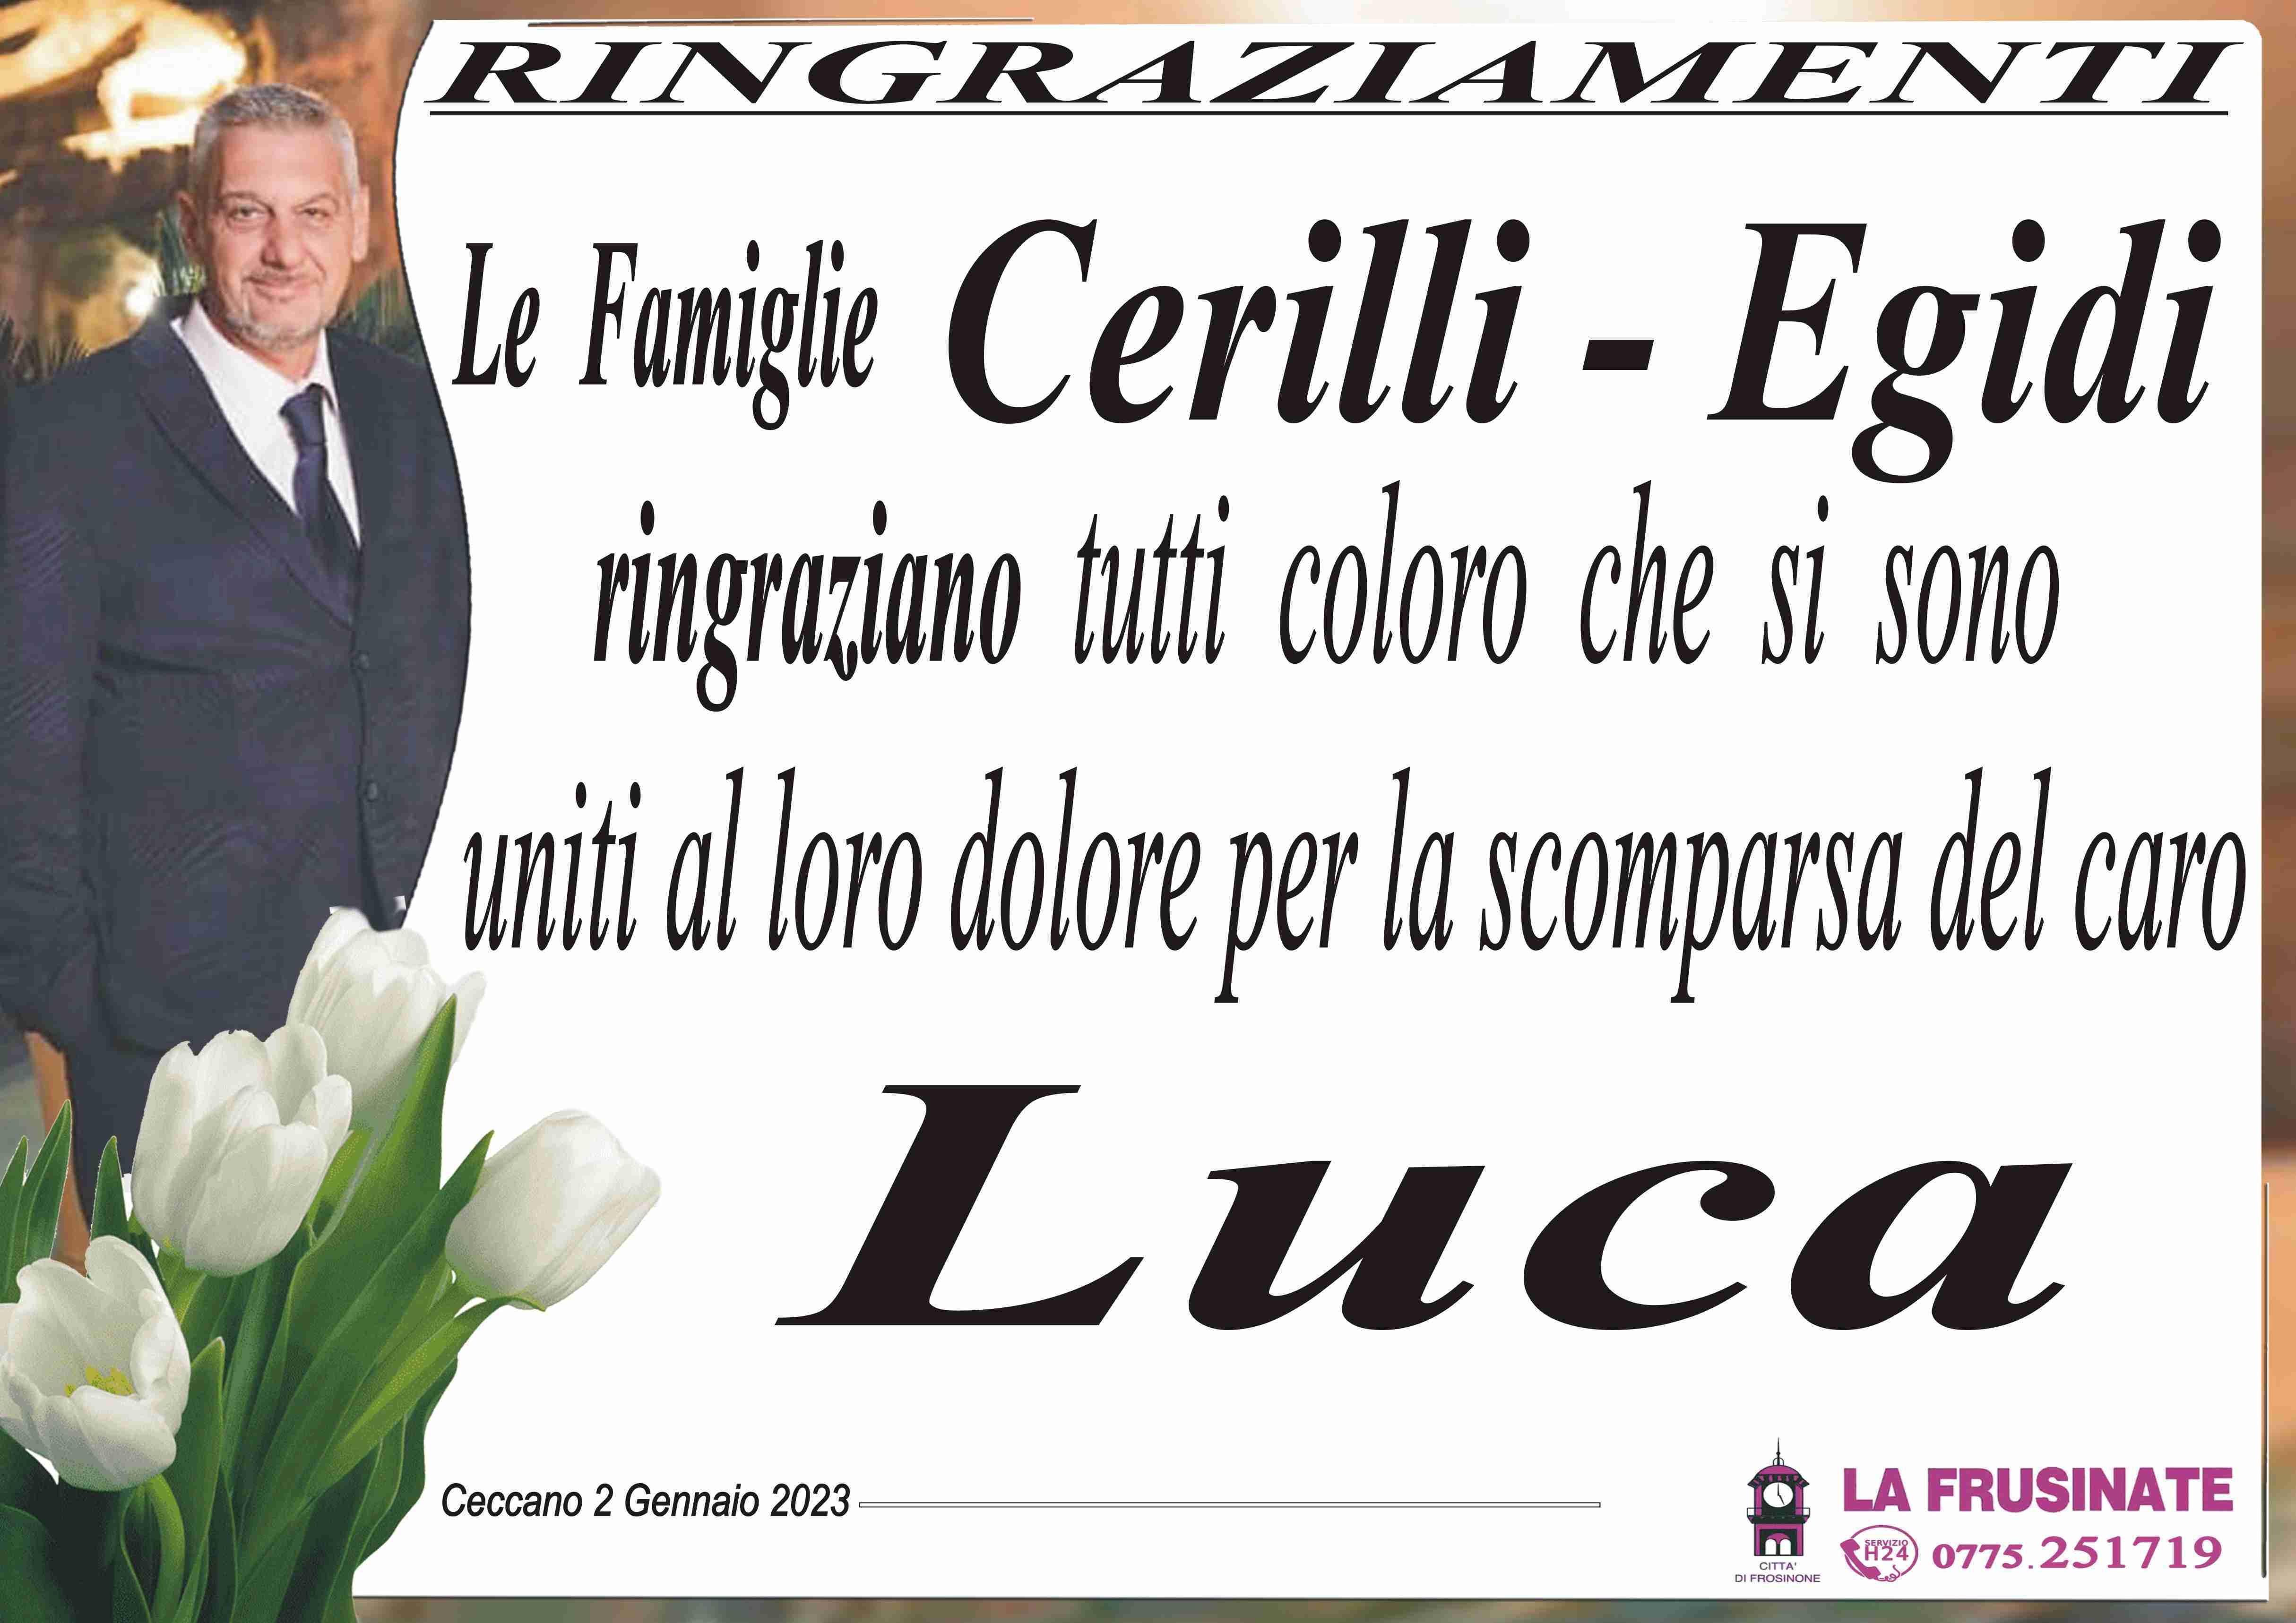 Luca Cerilli